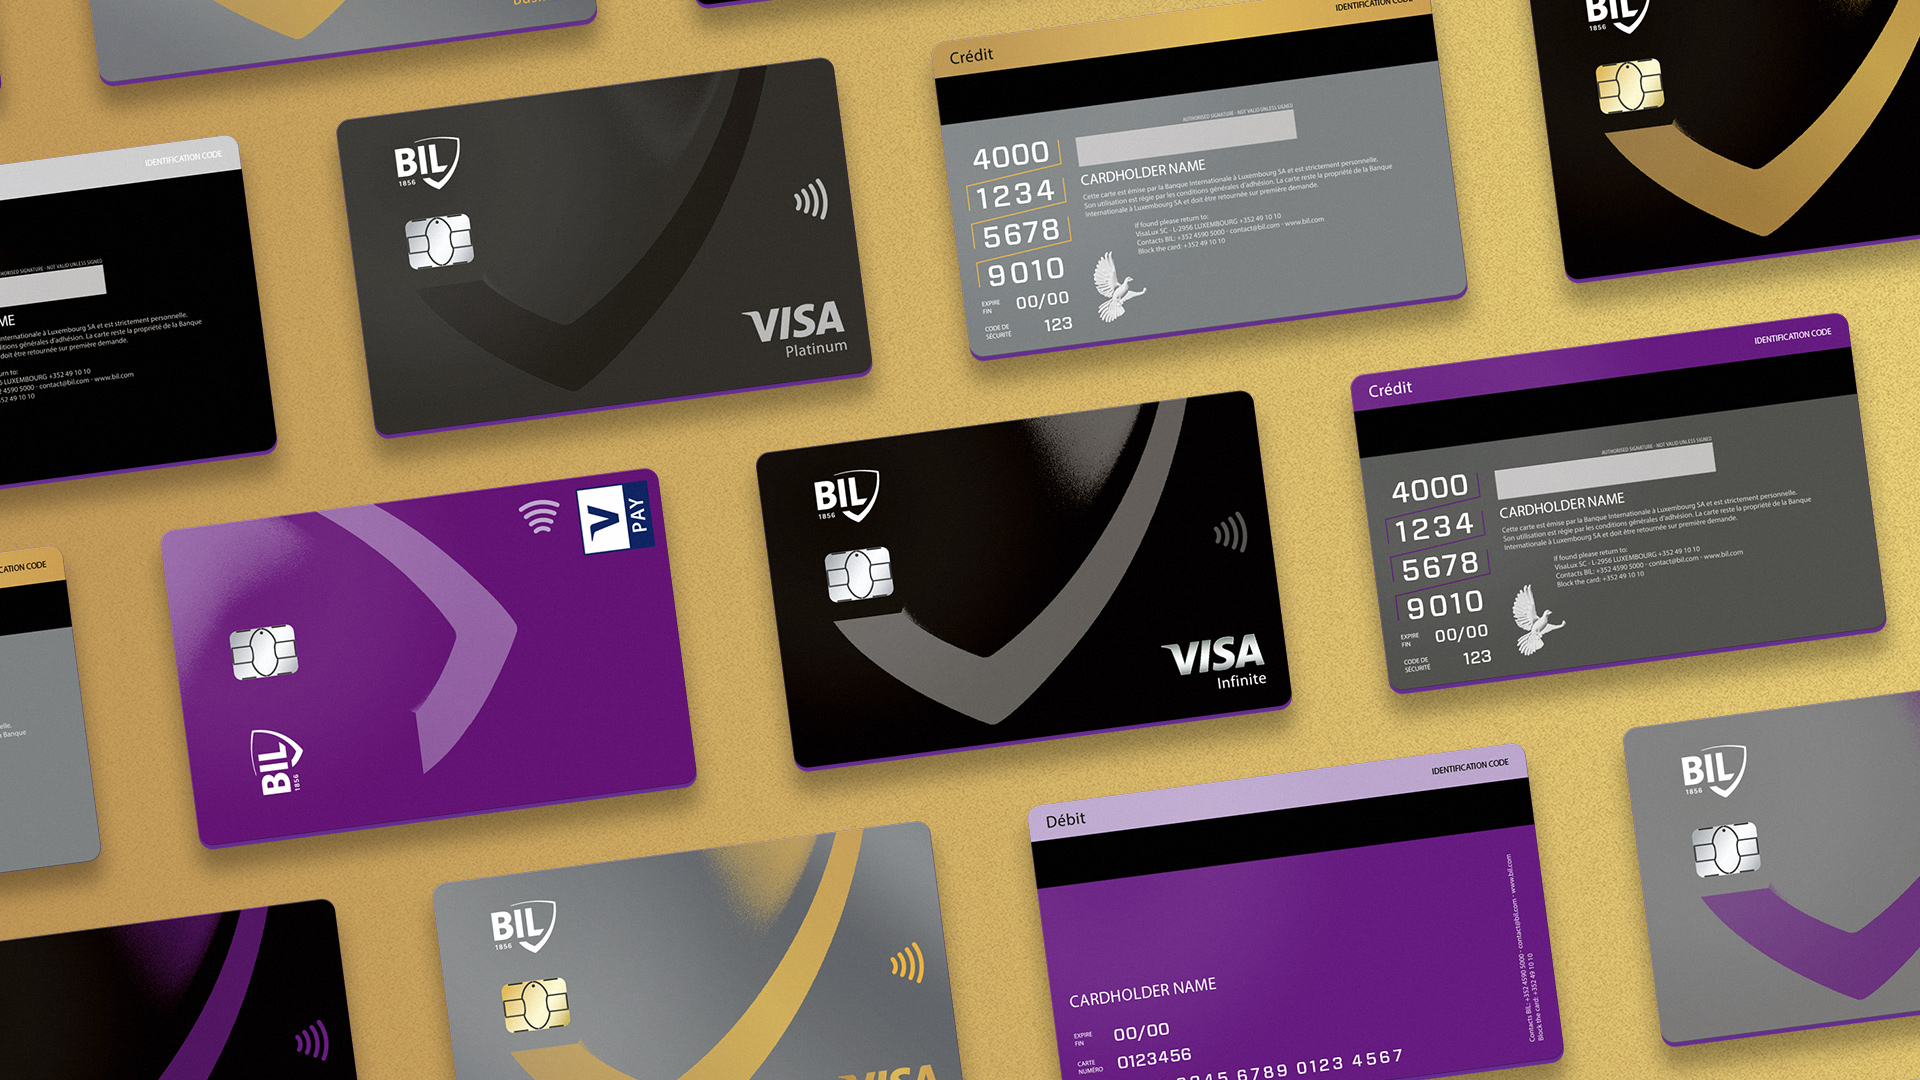 Vue de plusieurs cartes Visa émises par la Banque internationale à Luxembourg avec leurs nouveaux card designs. La carte V Pay verticale est violette, la carte Visa Infinite horizontale est noire.